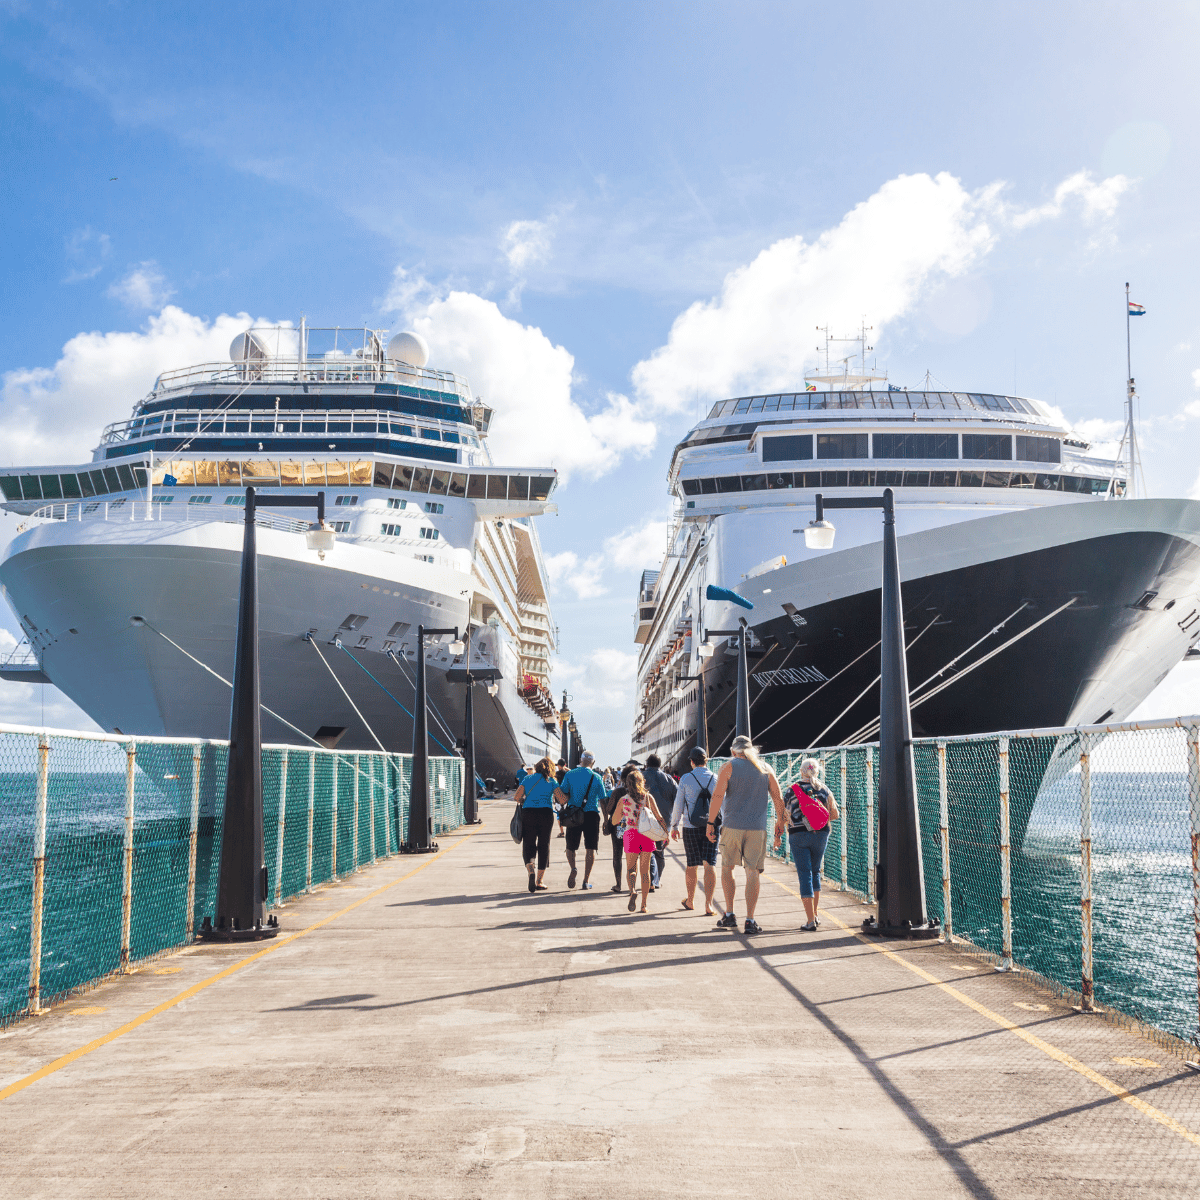 Cruise docked on both sides